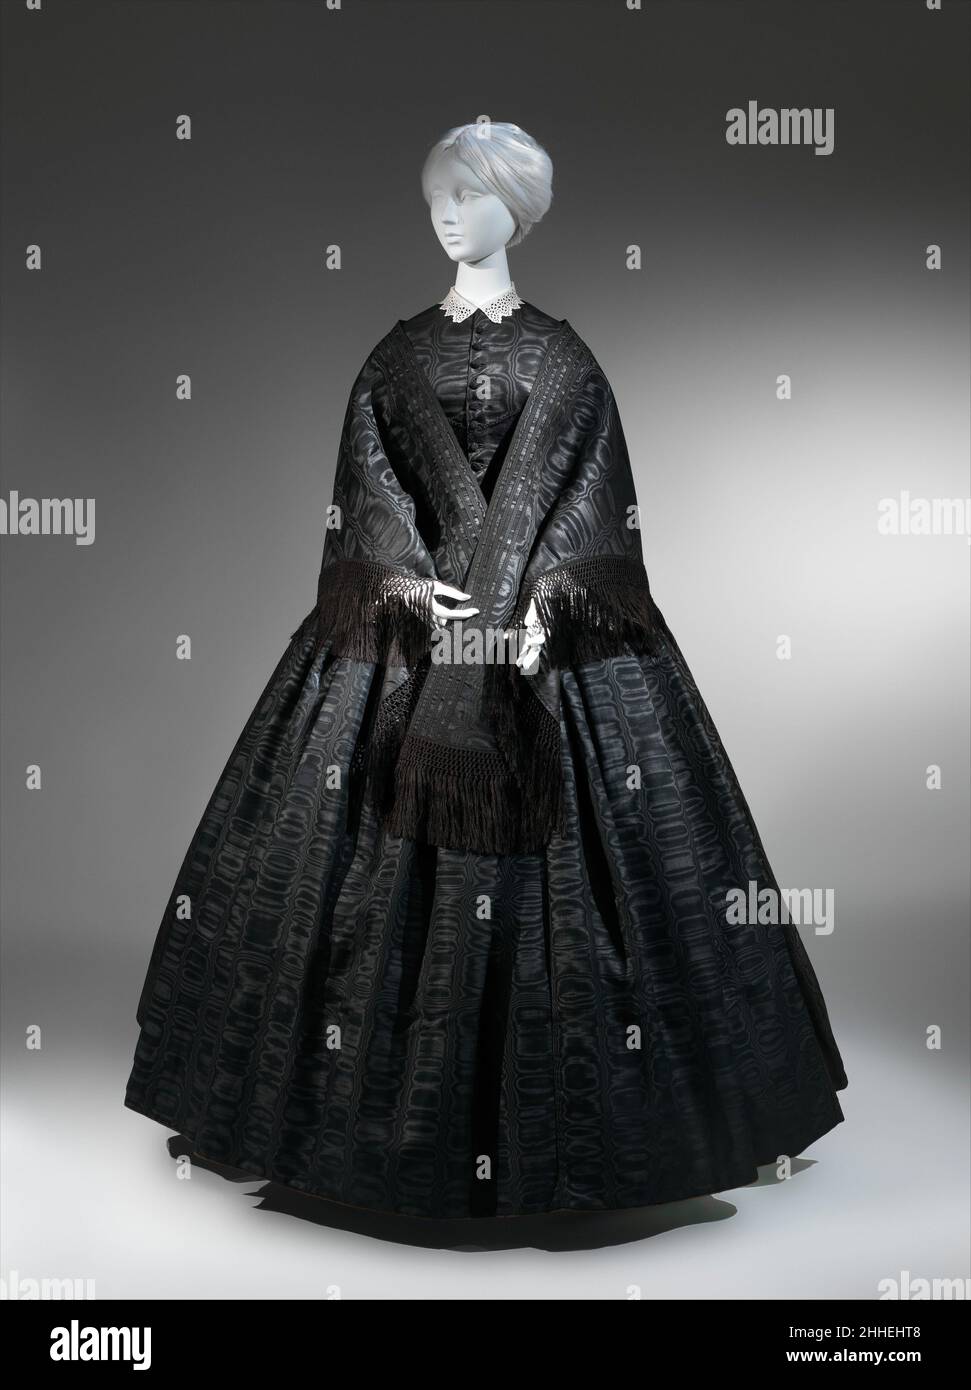 Ensemble de deuil 1857–60 tissus, garnitures et accessoires américains  vêtements de deuil distingués de tenue noire purement à la mode.Les  premiers stades de la robe de deuil, généralement composée de noirs mats